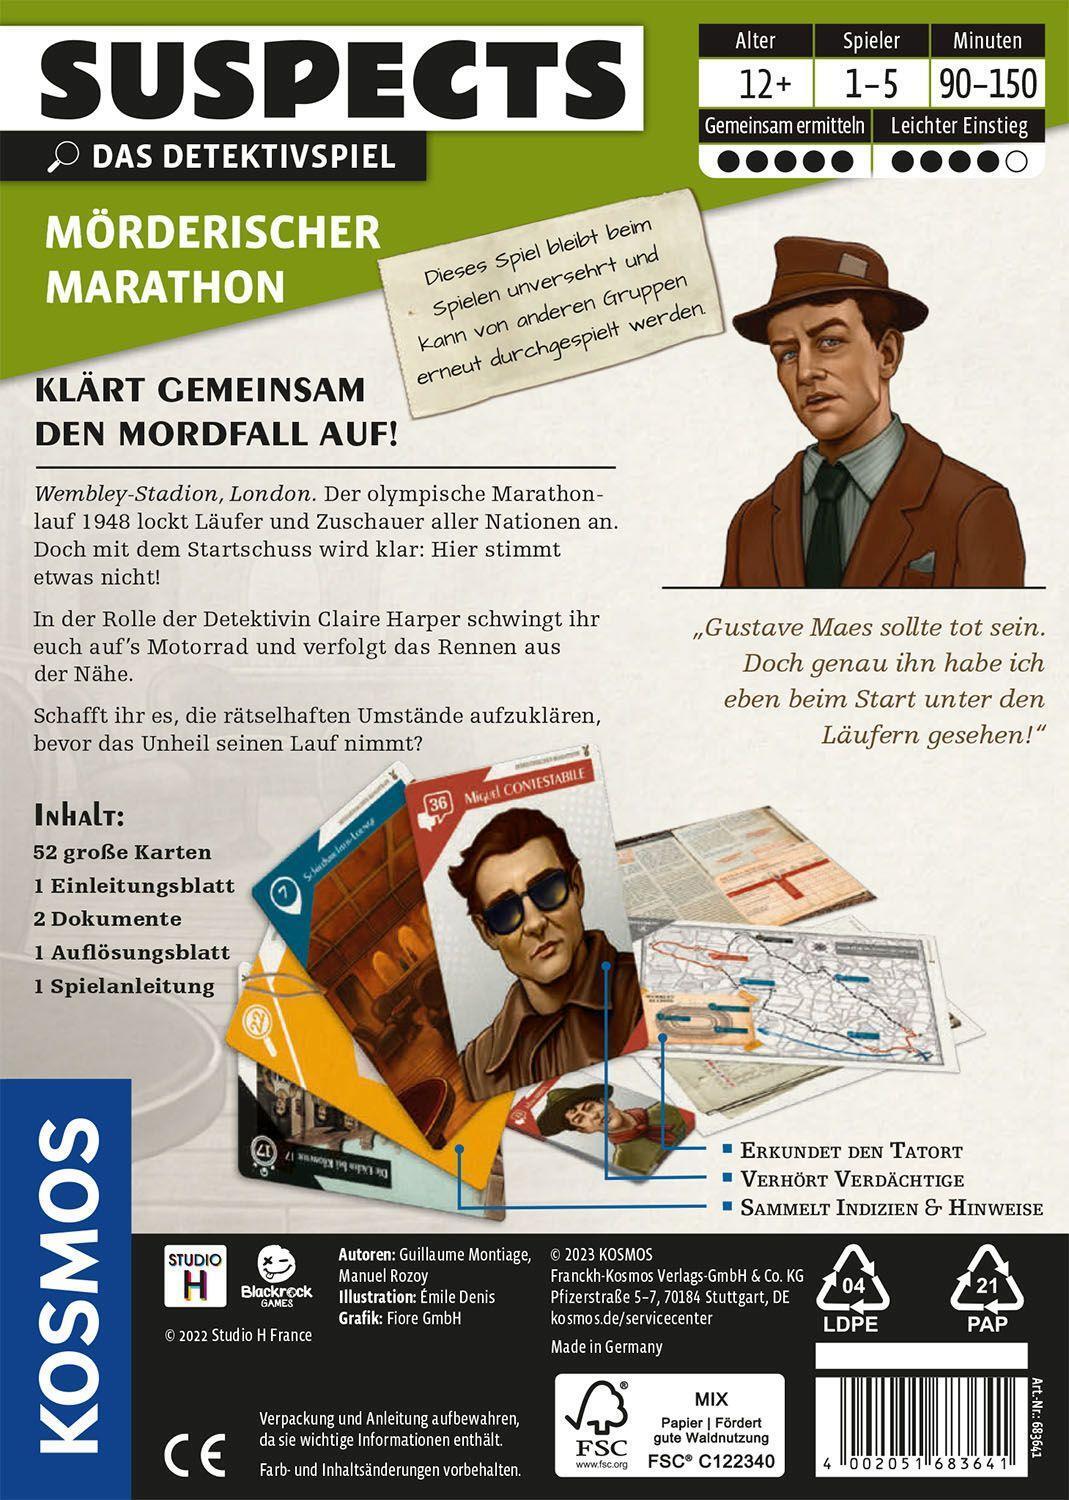 Bild: 4002051683641 | Suspects: Mörderischer Marathon | Spiel | Guillaume Montiage (u. a.)